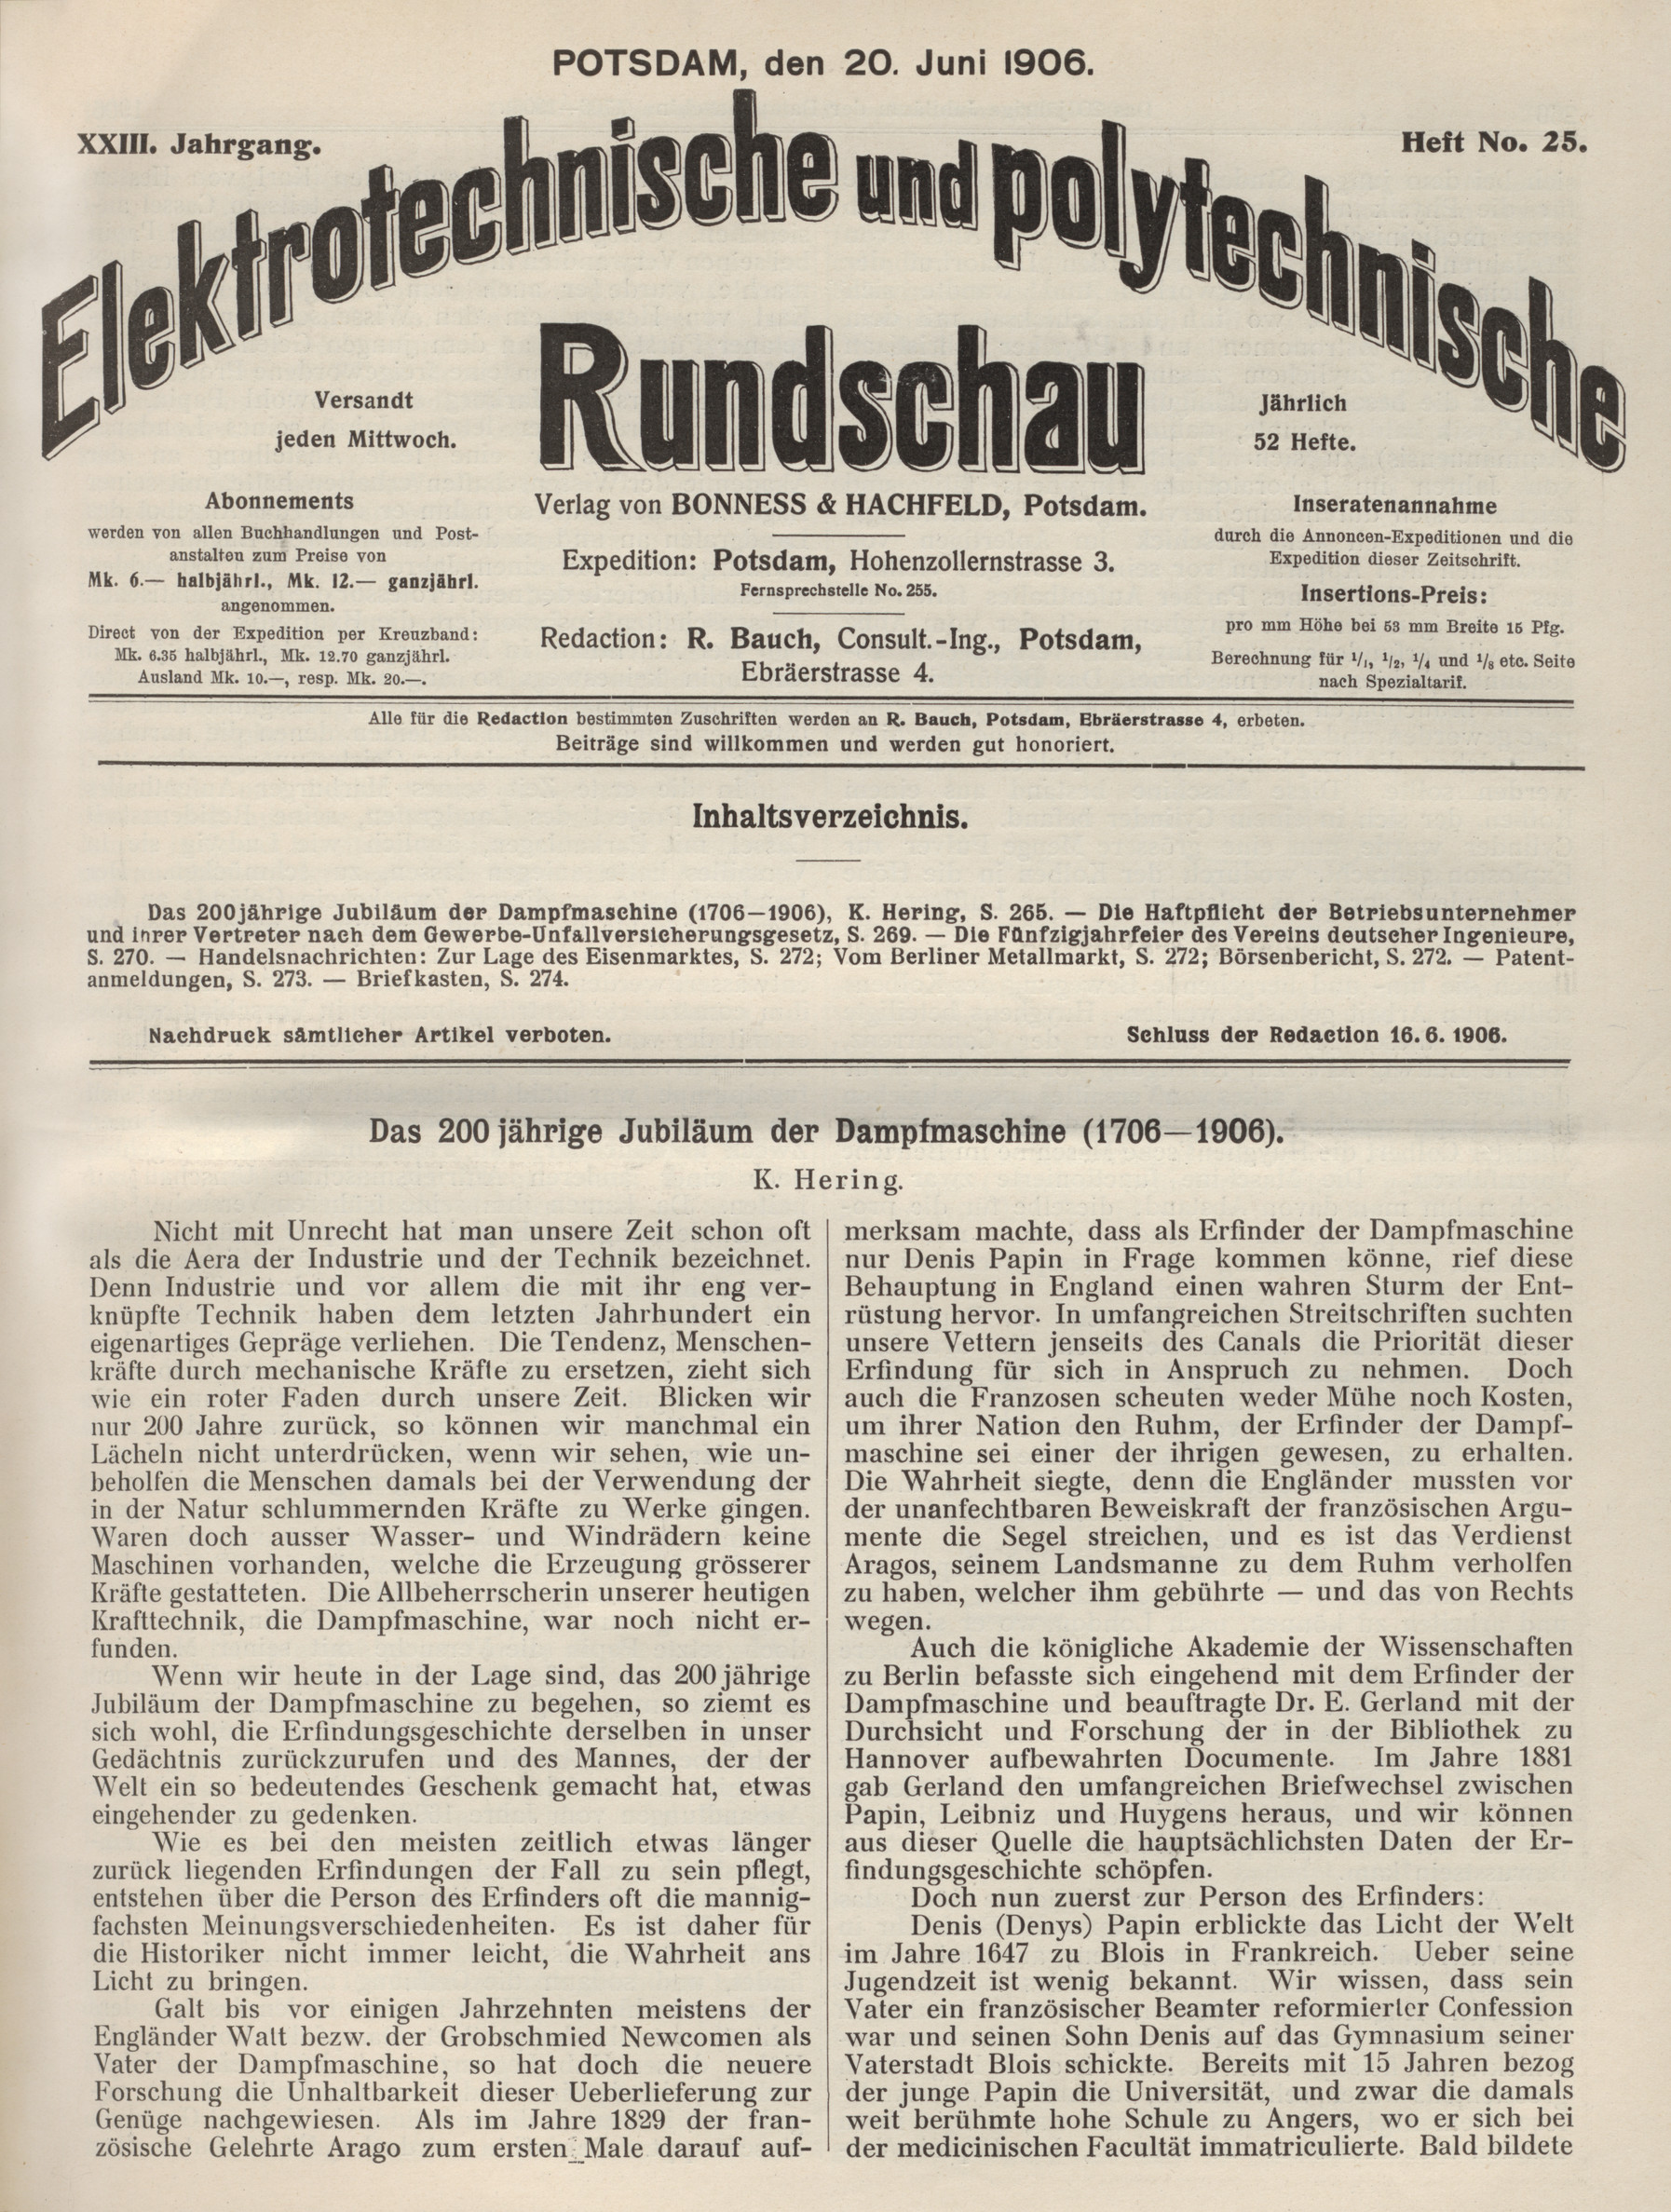 Elektrotechnische und polytechnische Rundschau, XXIII. Jahrgang, Heft No. 25